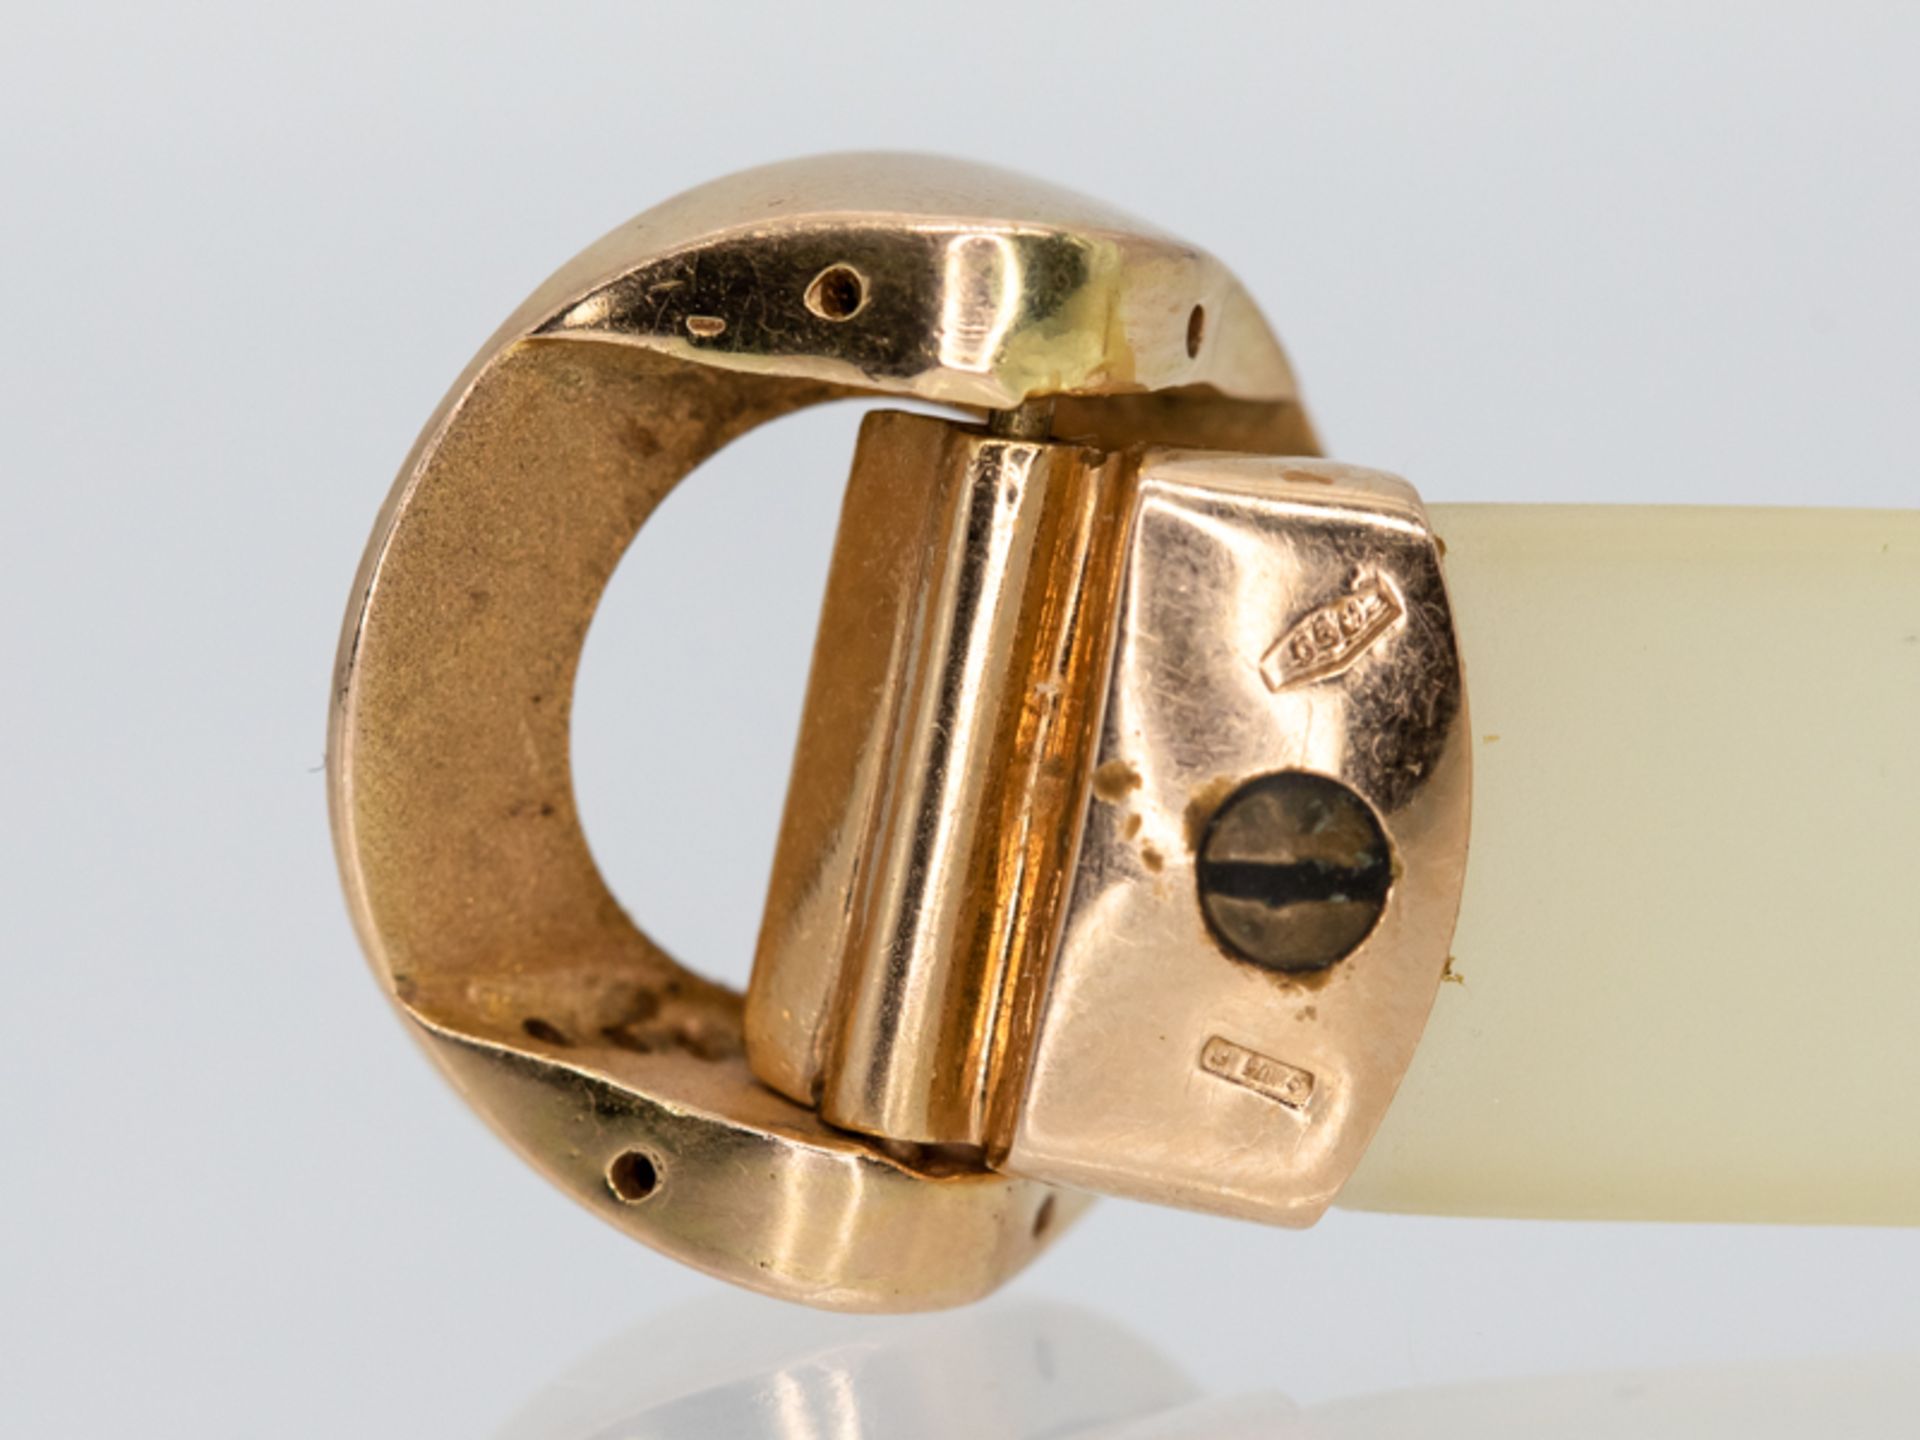 Armband aus Kautschuk mit goldener Schließe und 14 kleinen Brillanten, zus. ca. 0,14 ct, bez. Alessa - Image 4 of 7